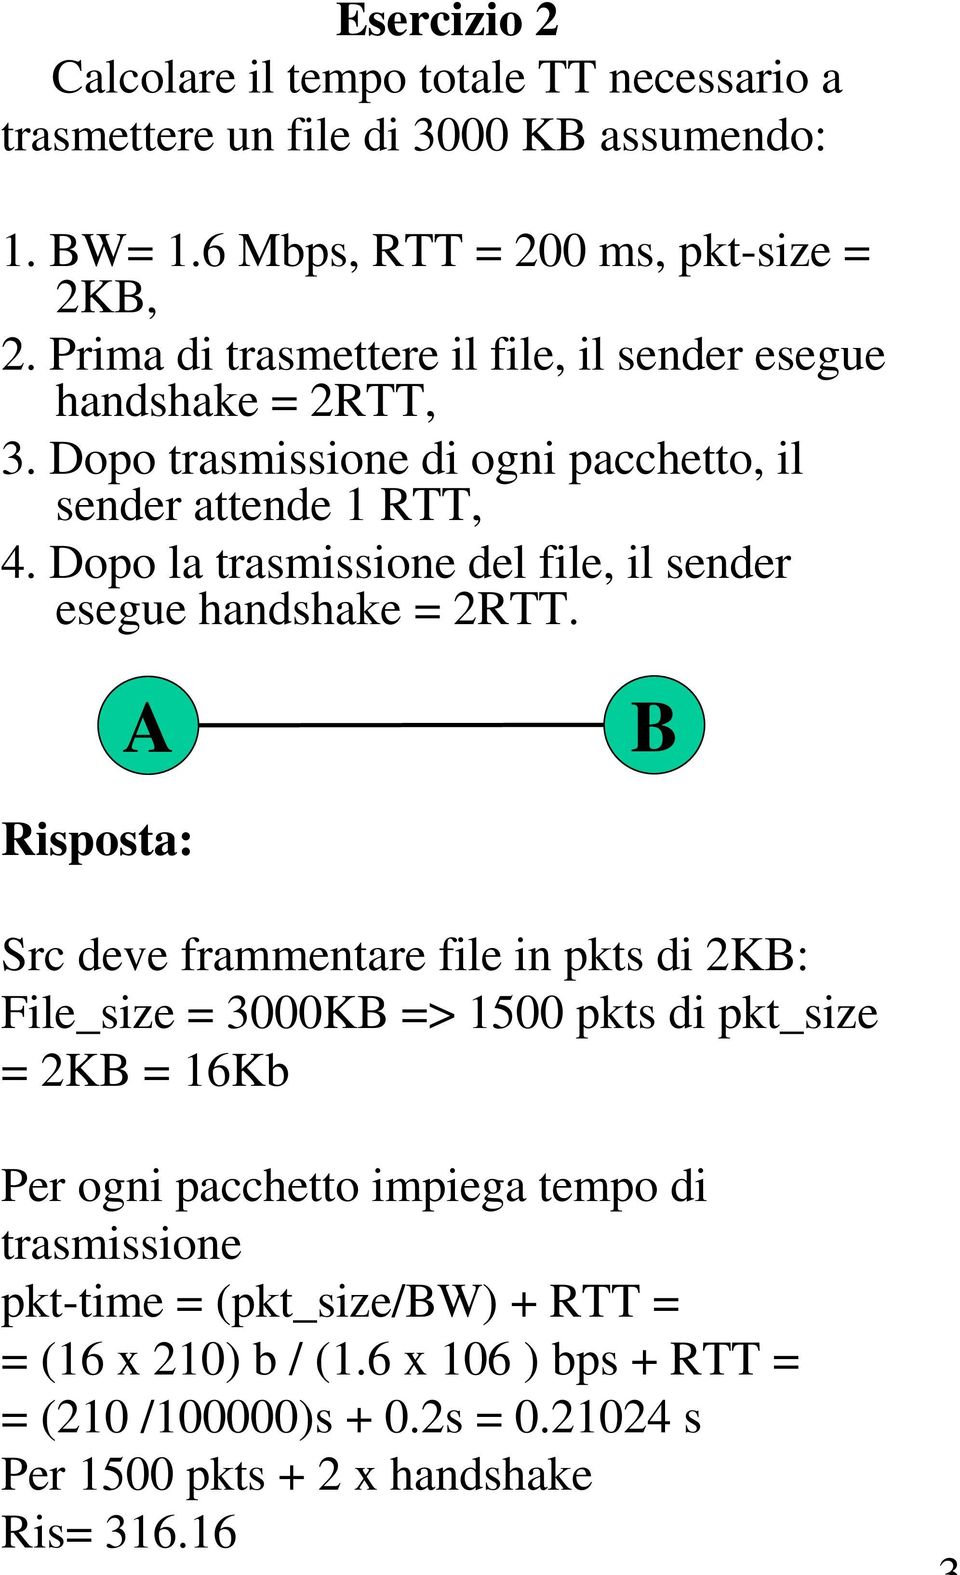 Dopo la trasmissione del file, il sender esegue handshake = 2RTT.